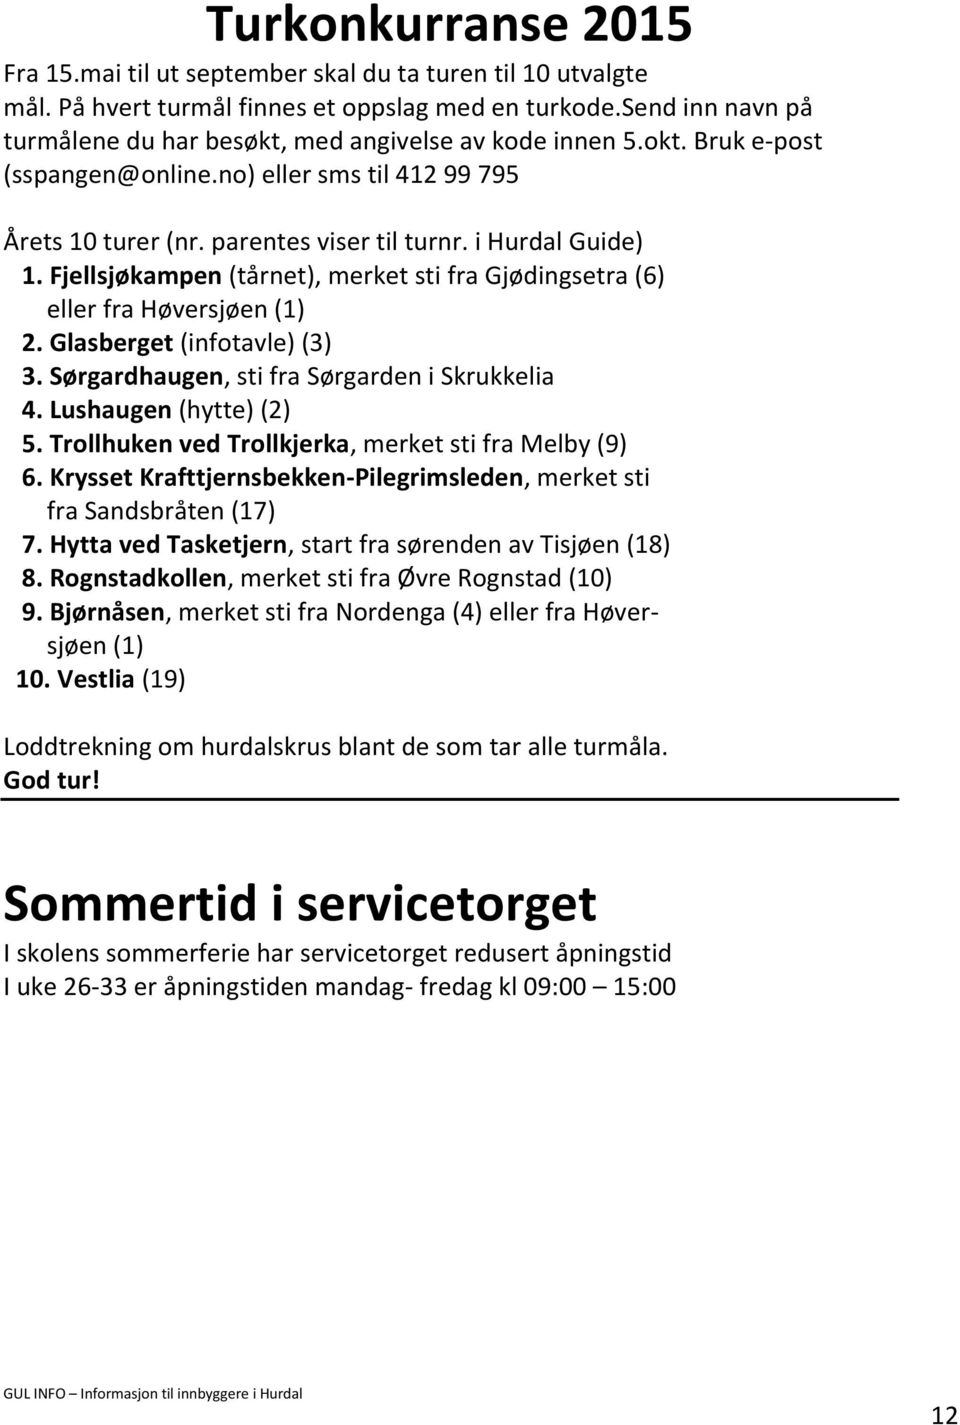 Fjellsjøkampen (tårnet), merket sti fra Gjødingsetra (6) eller fra Høversjøen (1) 2. Glasberget (infotavle) (3) 3. Sørgardhaugen, sti fra Sørgarden i Skrukkelia 4. Lushaugen (hytte) (2) 5.